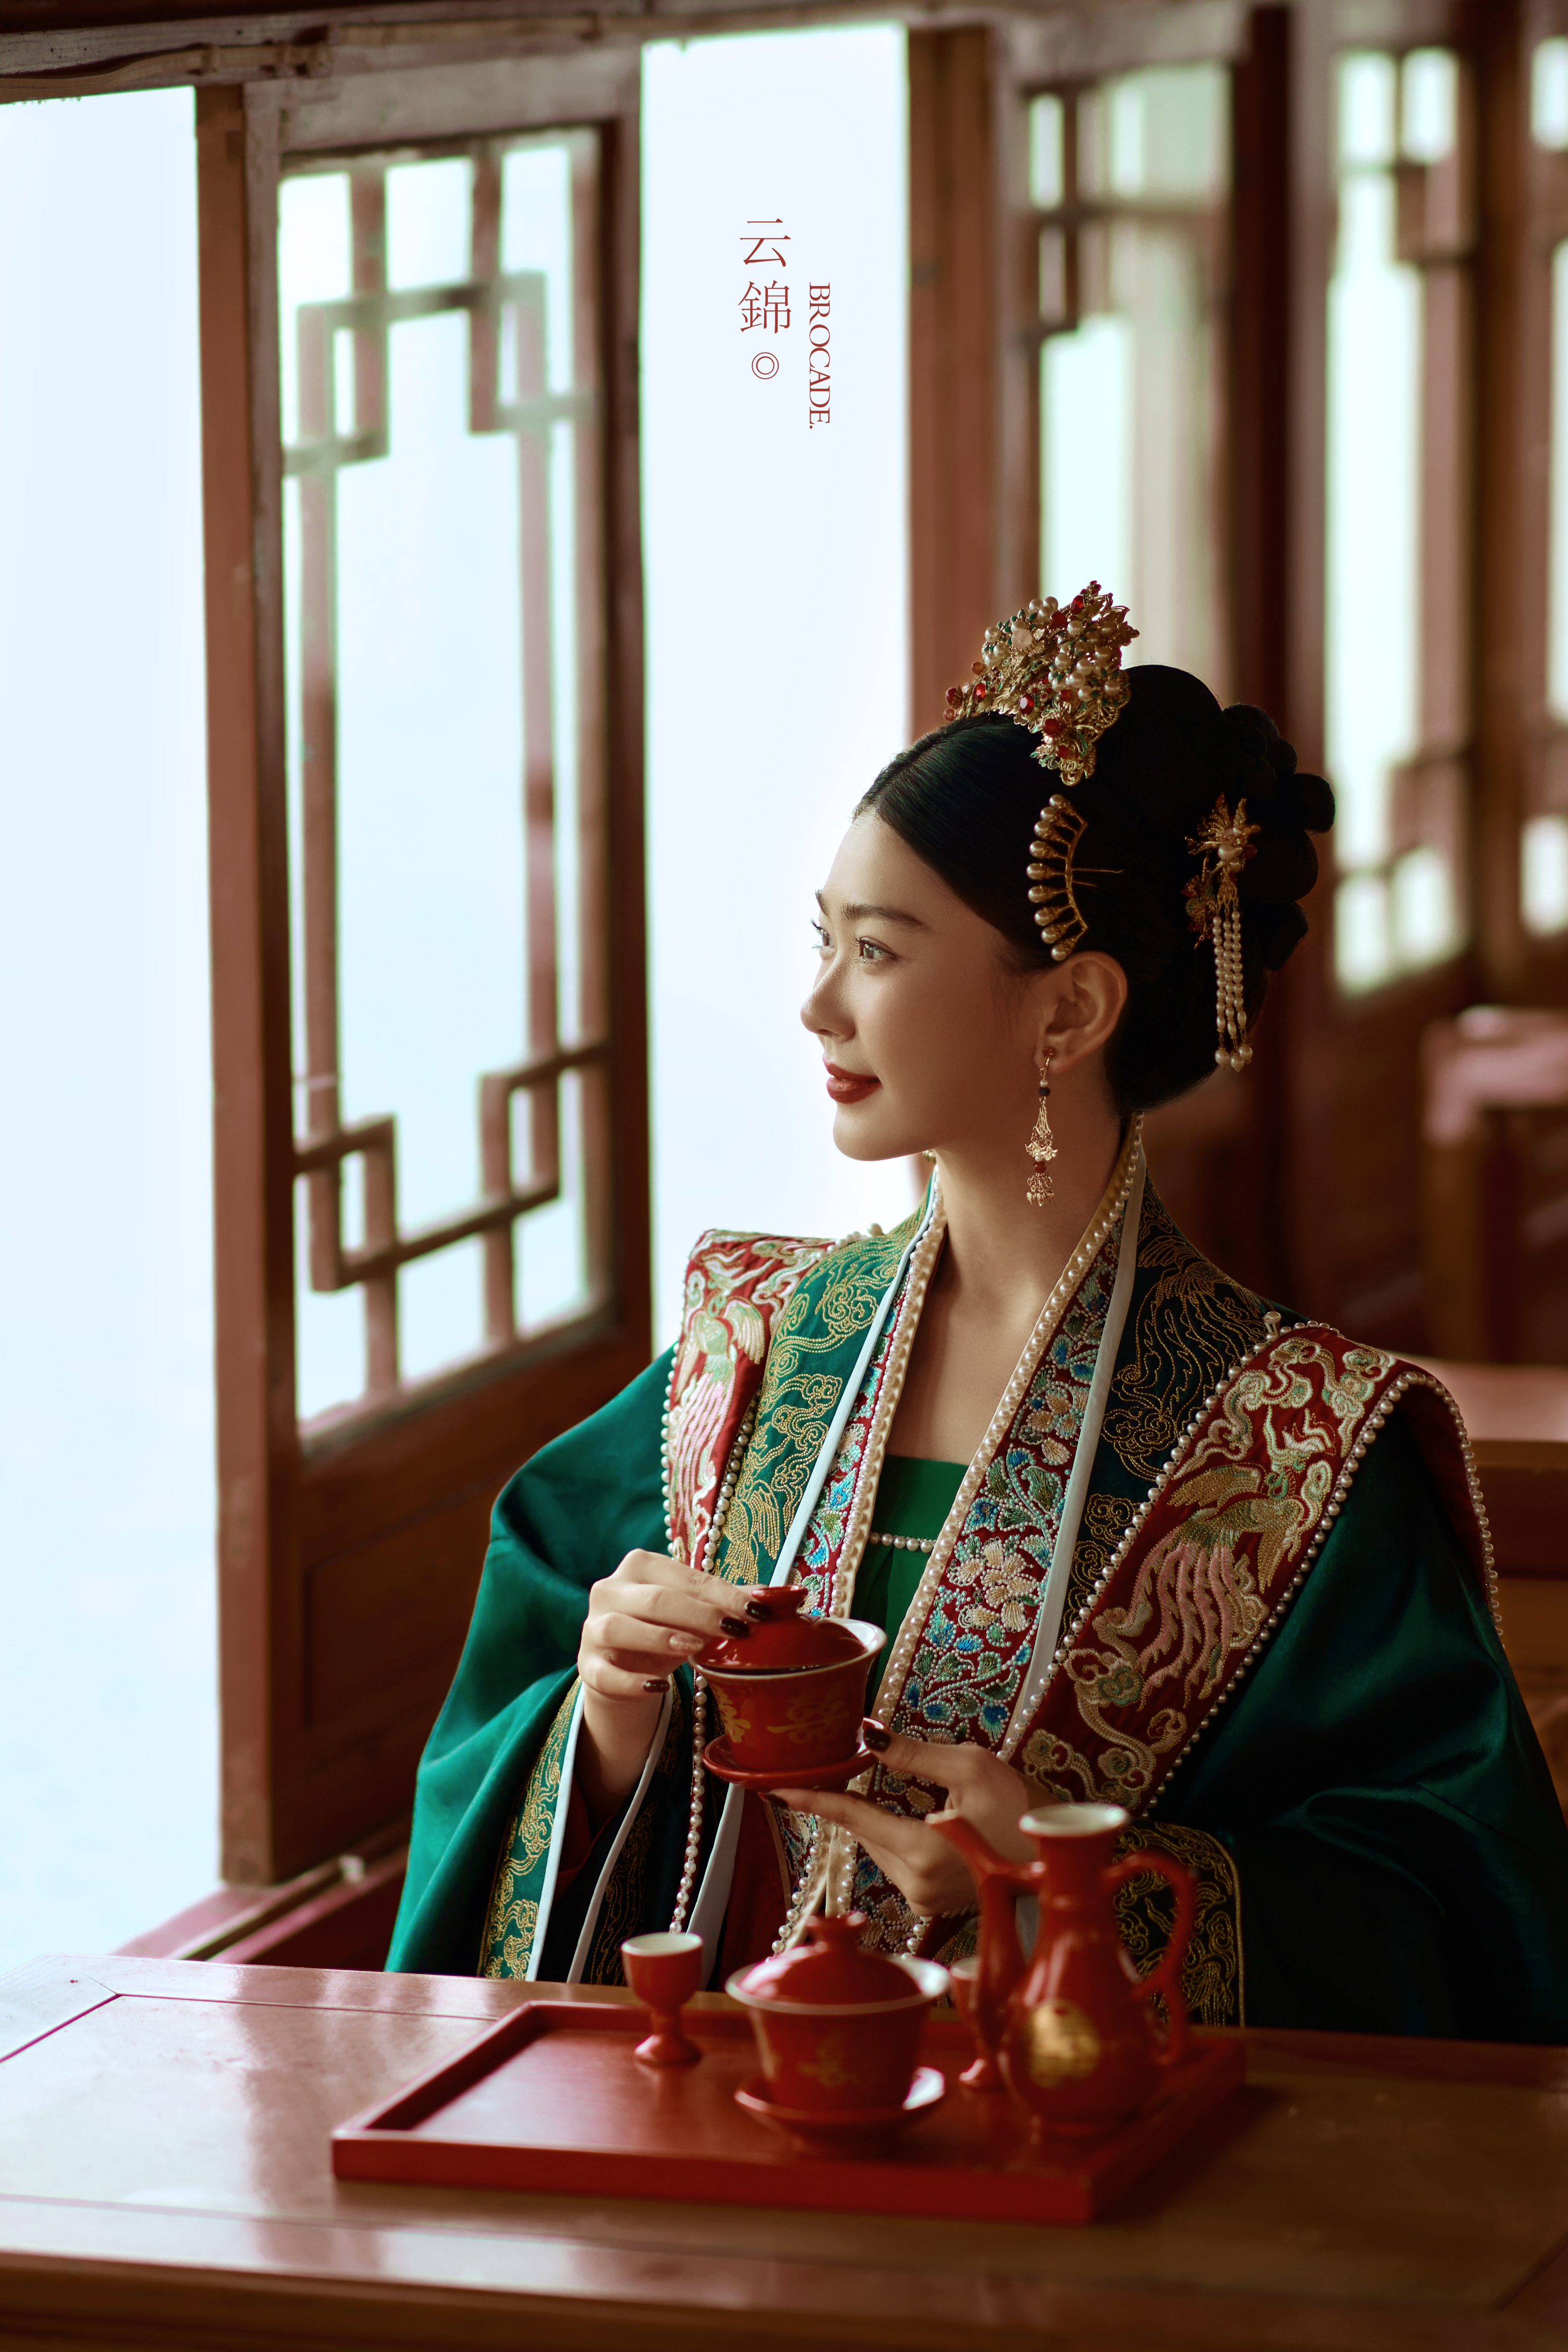 【中式喜嫁】中国新娘的锦绣嫁衣 婚纱照